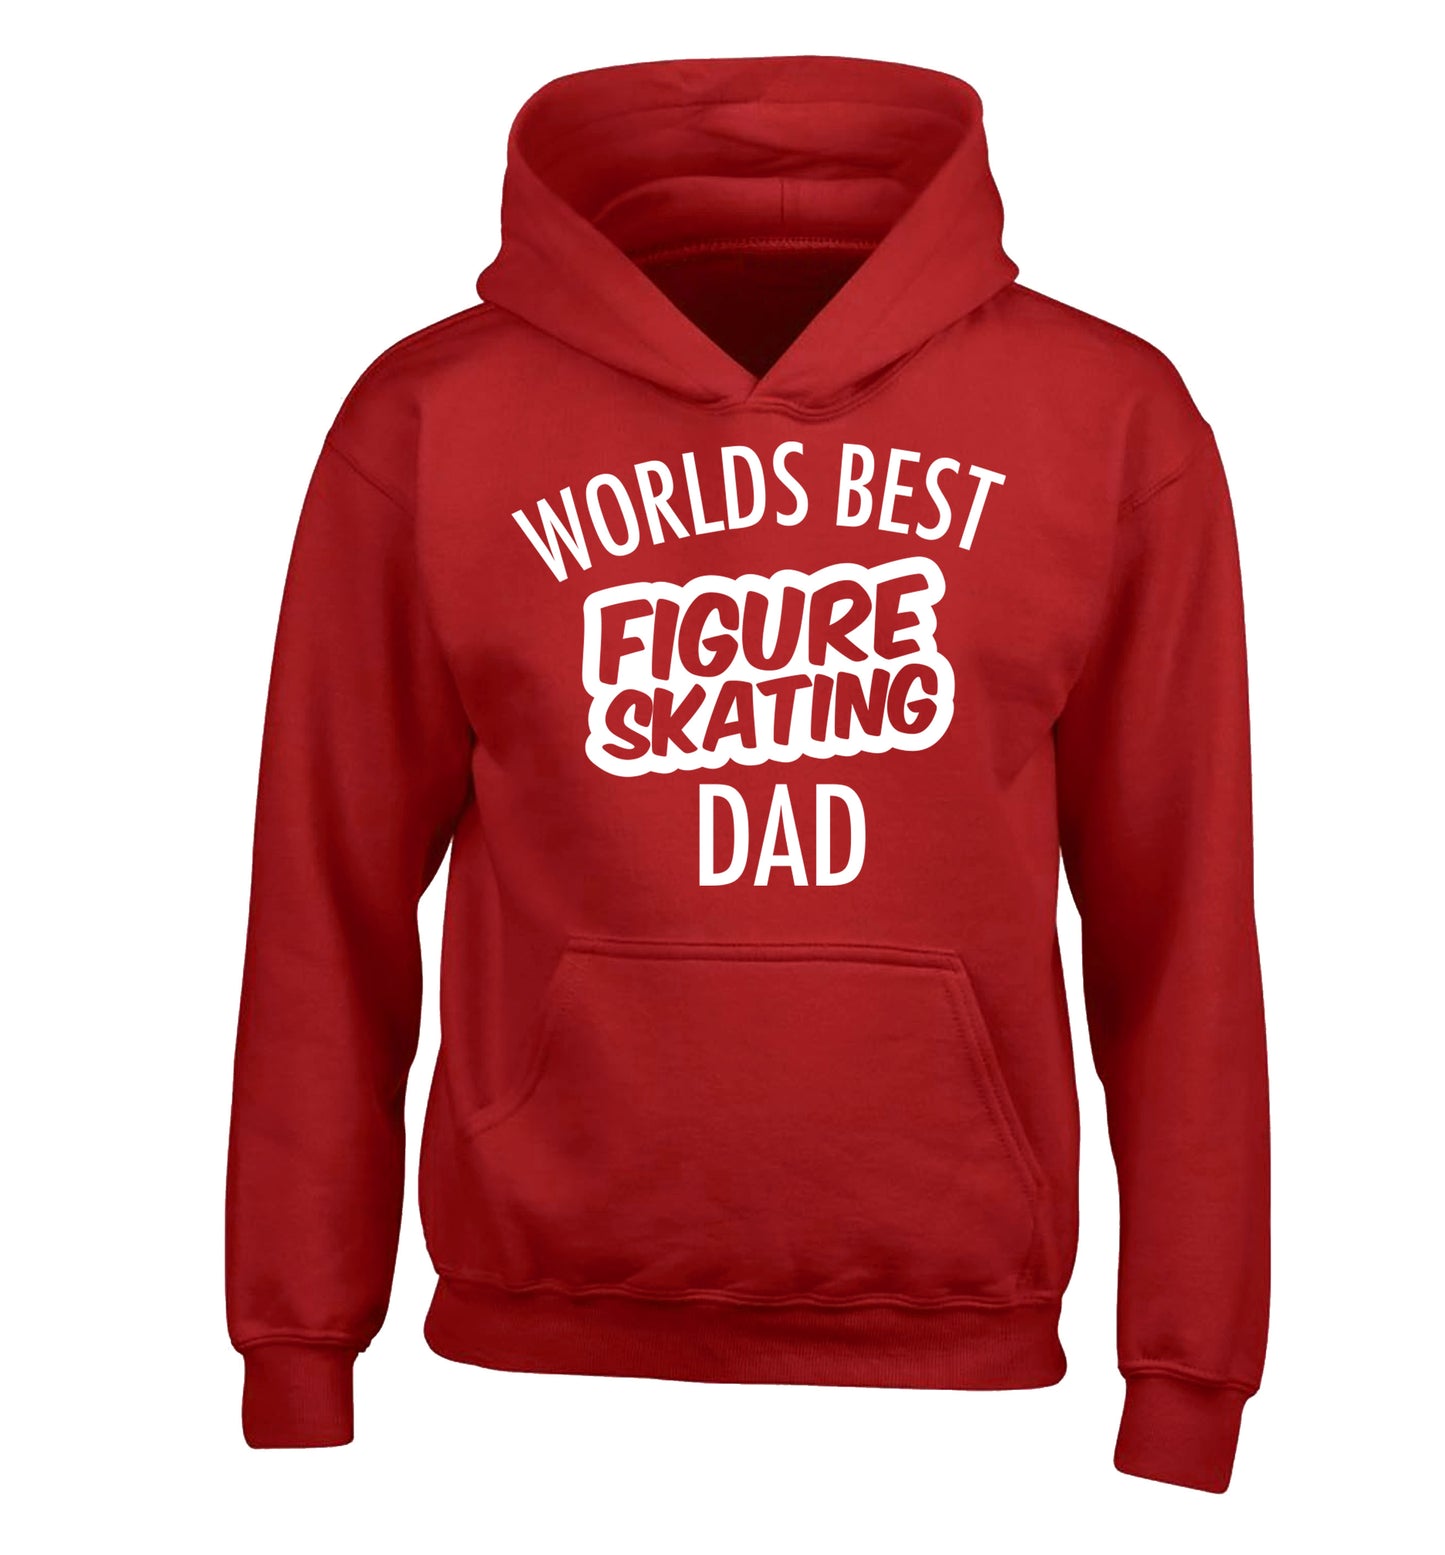 Worlds best figure skating dad children's red hoodie 12-14 Years